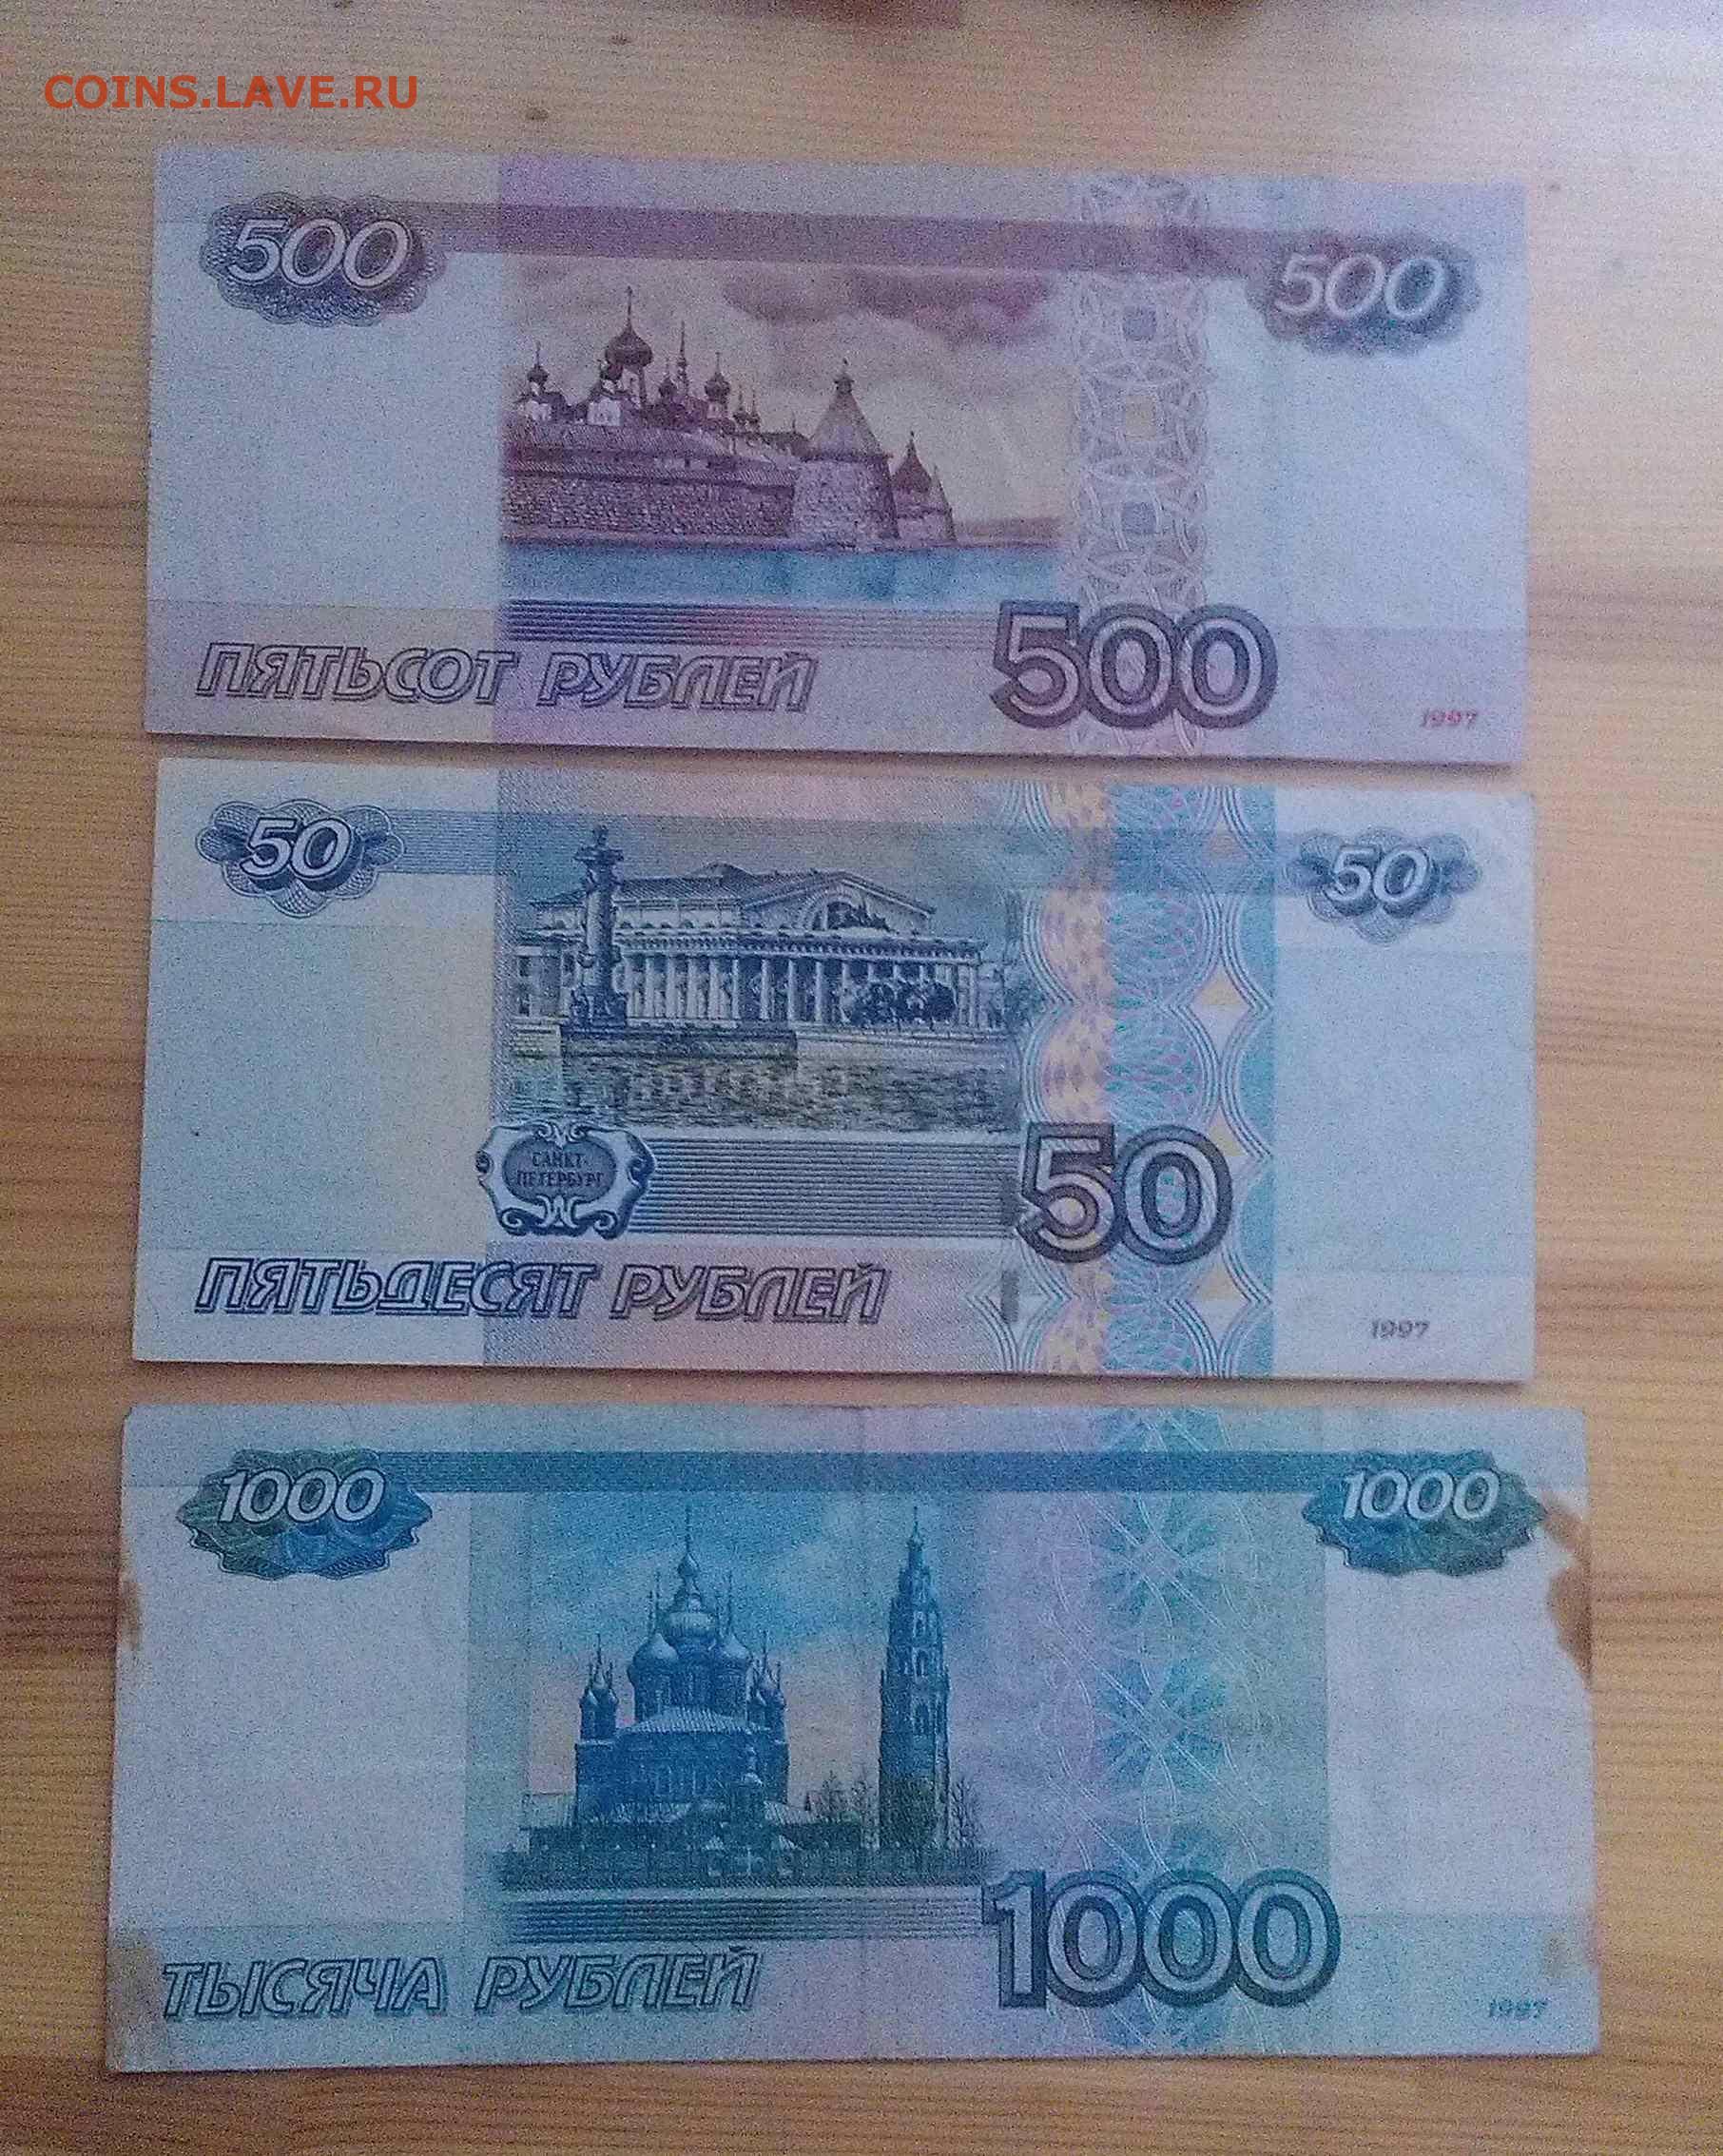 1000 рублей 2010. 50 Рублей и 1000 рублей. 500 И 1000 рублей. 500 Рублей и 50 рублей. 50 И 500 рублей.